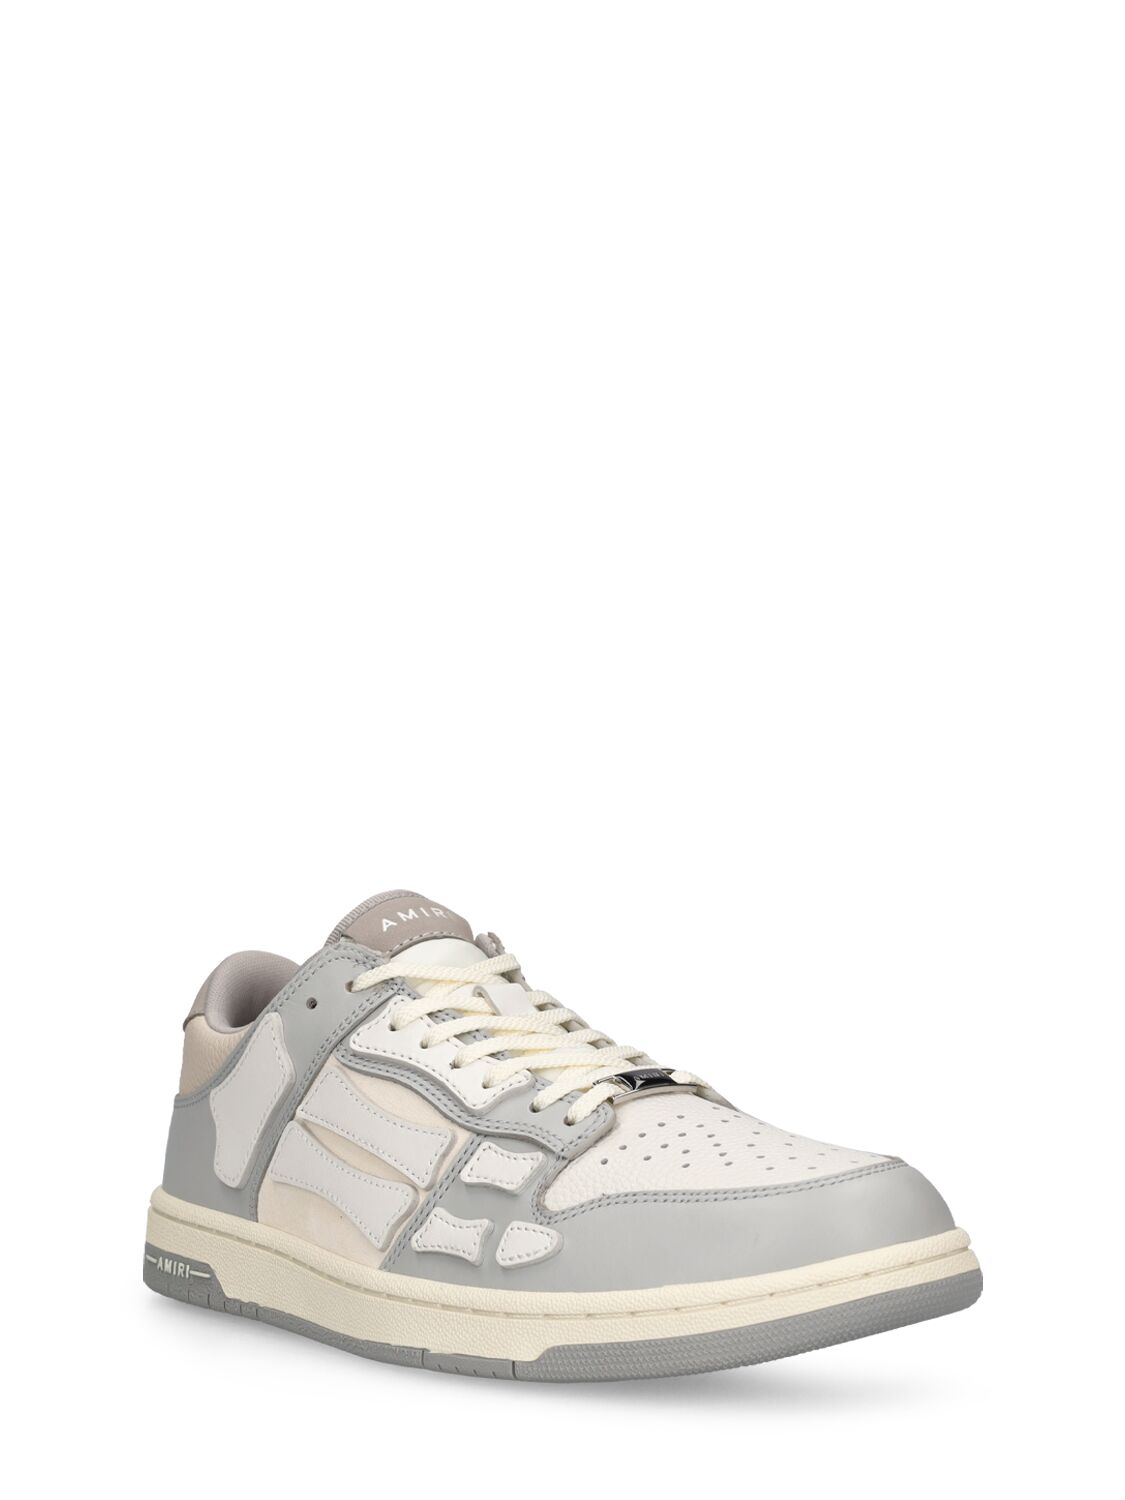 Shop Amiri Skel Top Leather Low Top Sneakers In Grey,white